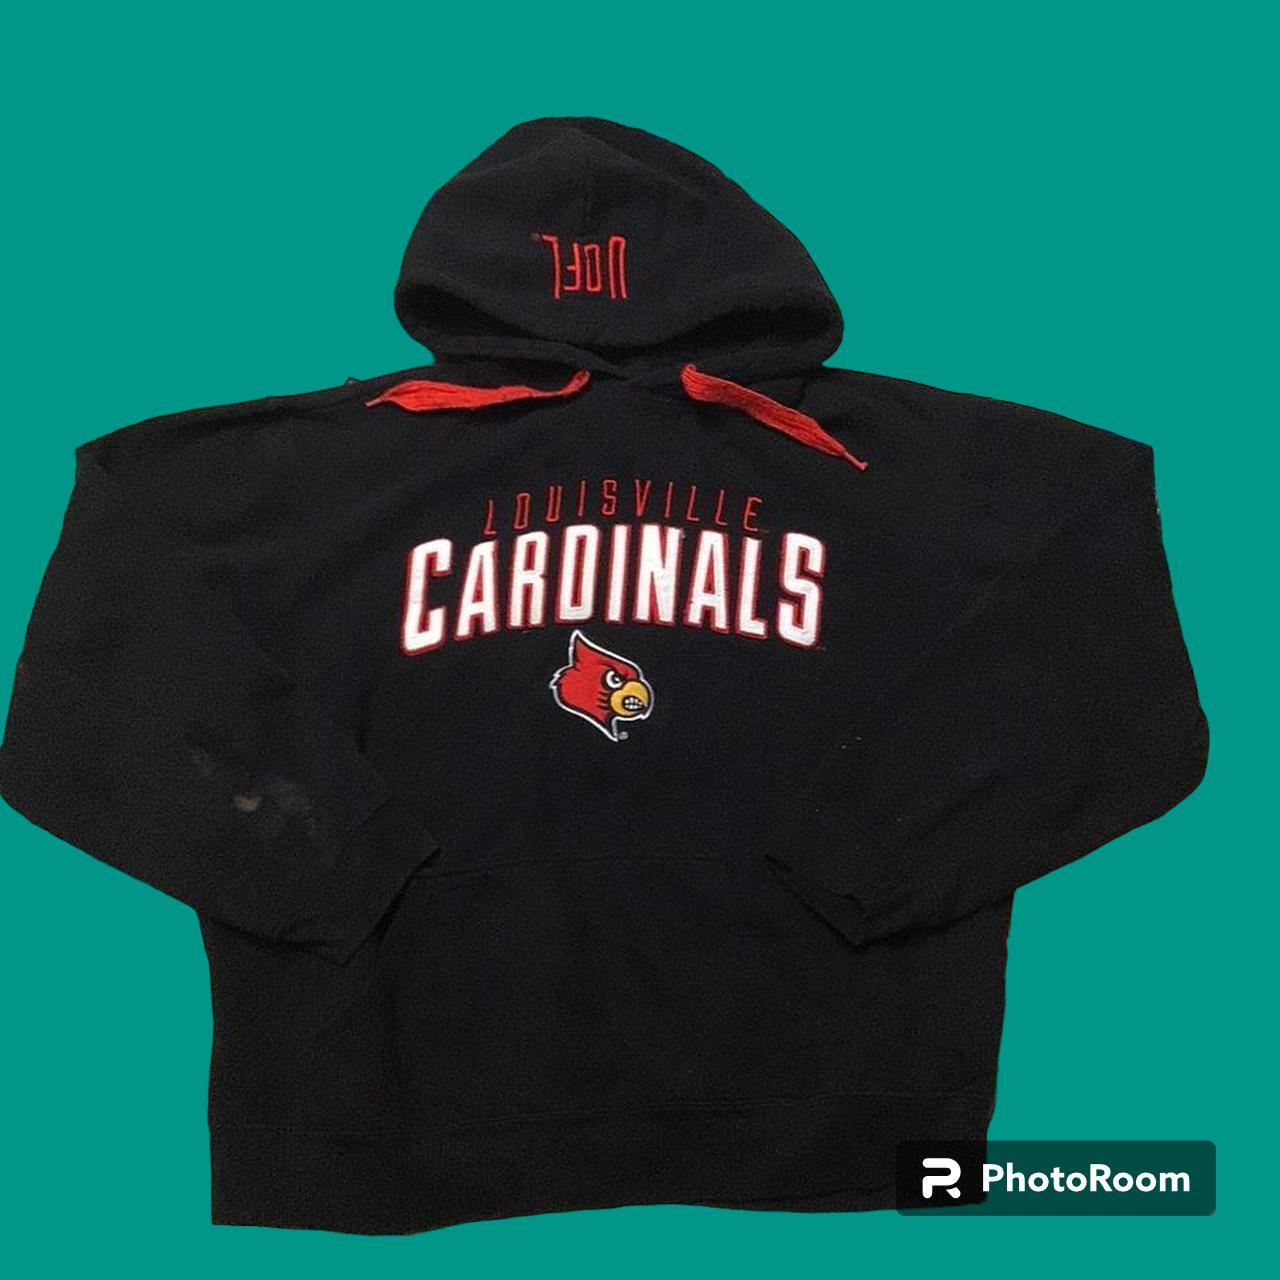  Louisville Cardinals Men's Apparel Hoodies